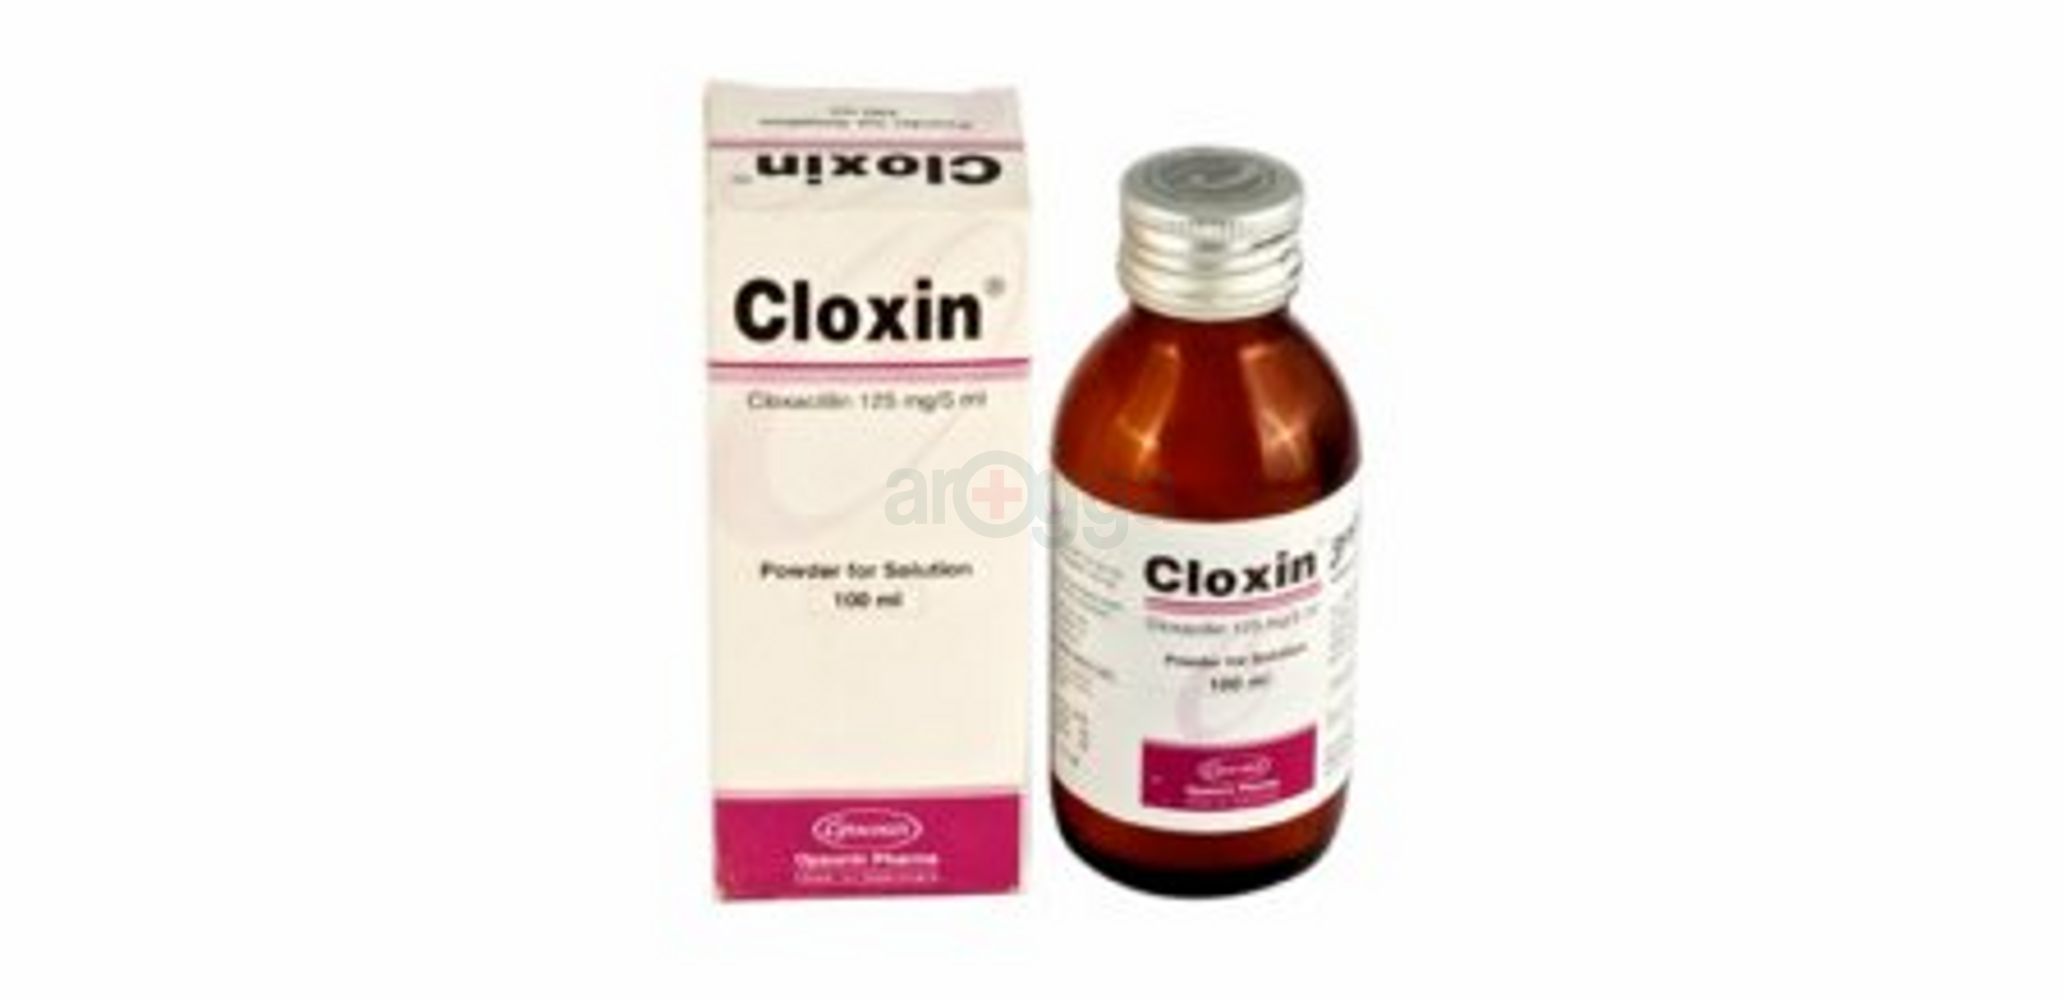 Cloxin